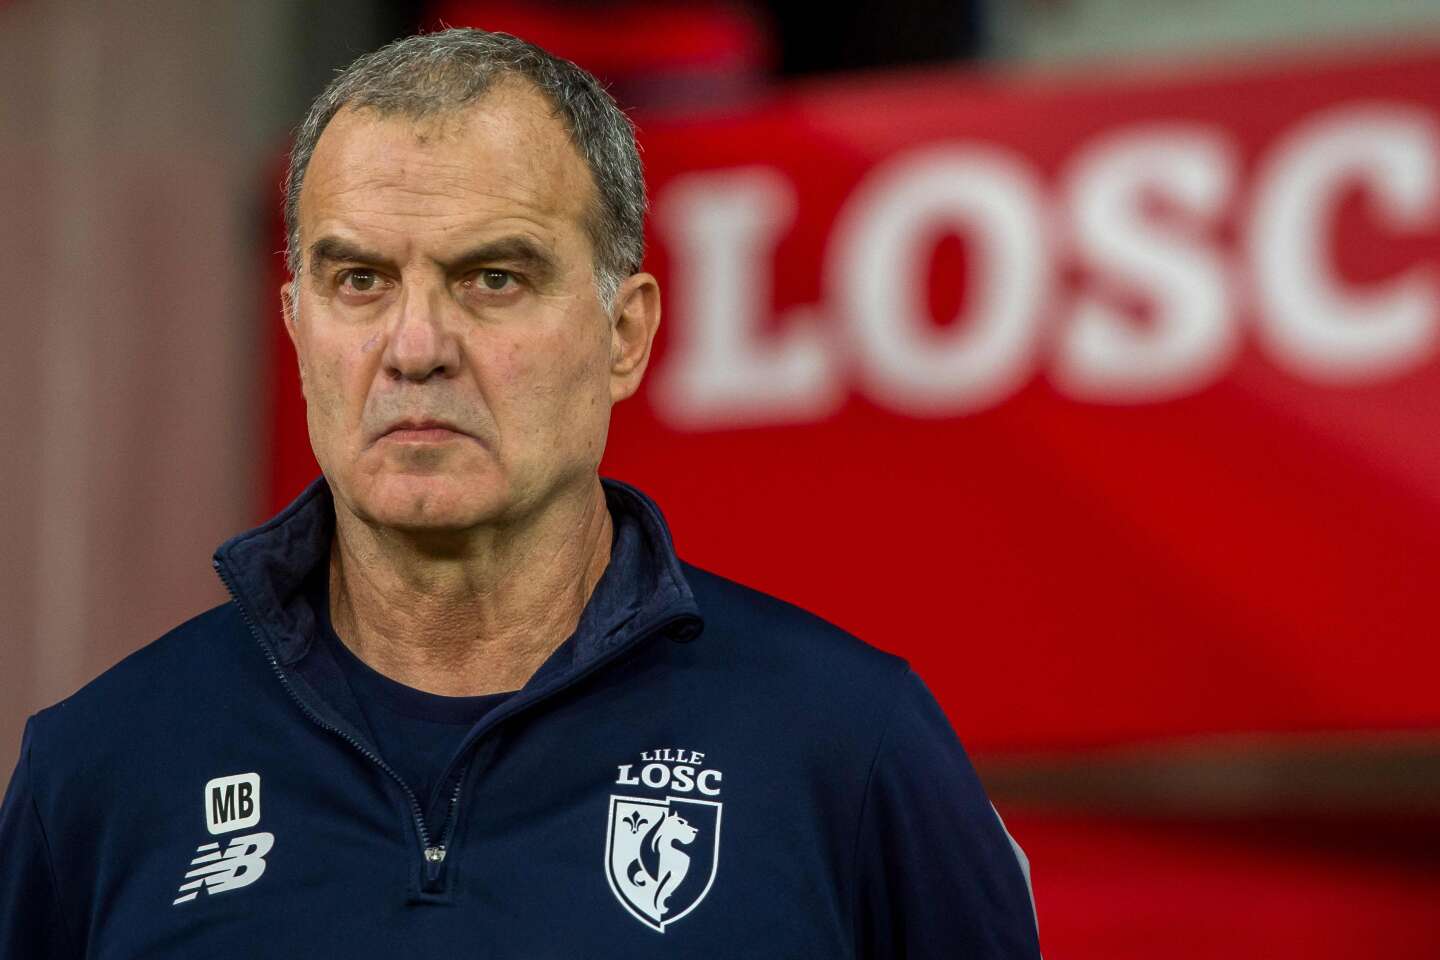 Le LOSC condamné à verser 2 millions d’euros à son ancien entraîneur Marcelo Bielsa, six ans après son départ